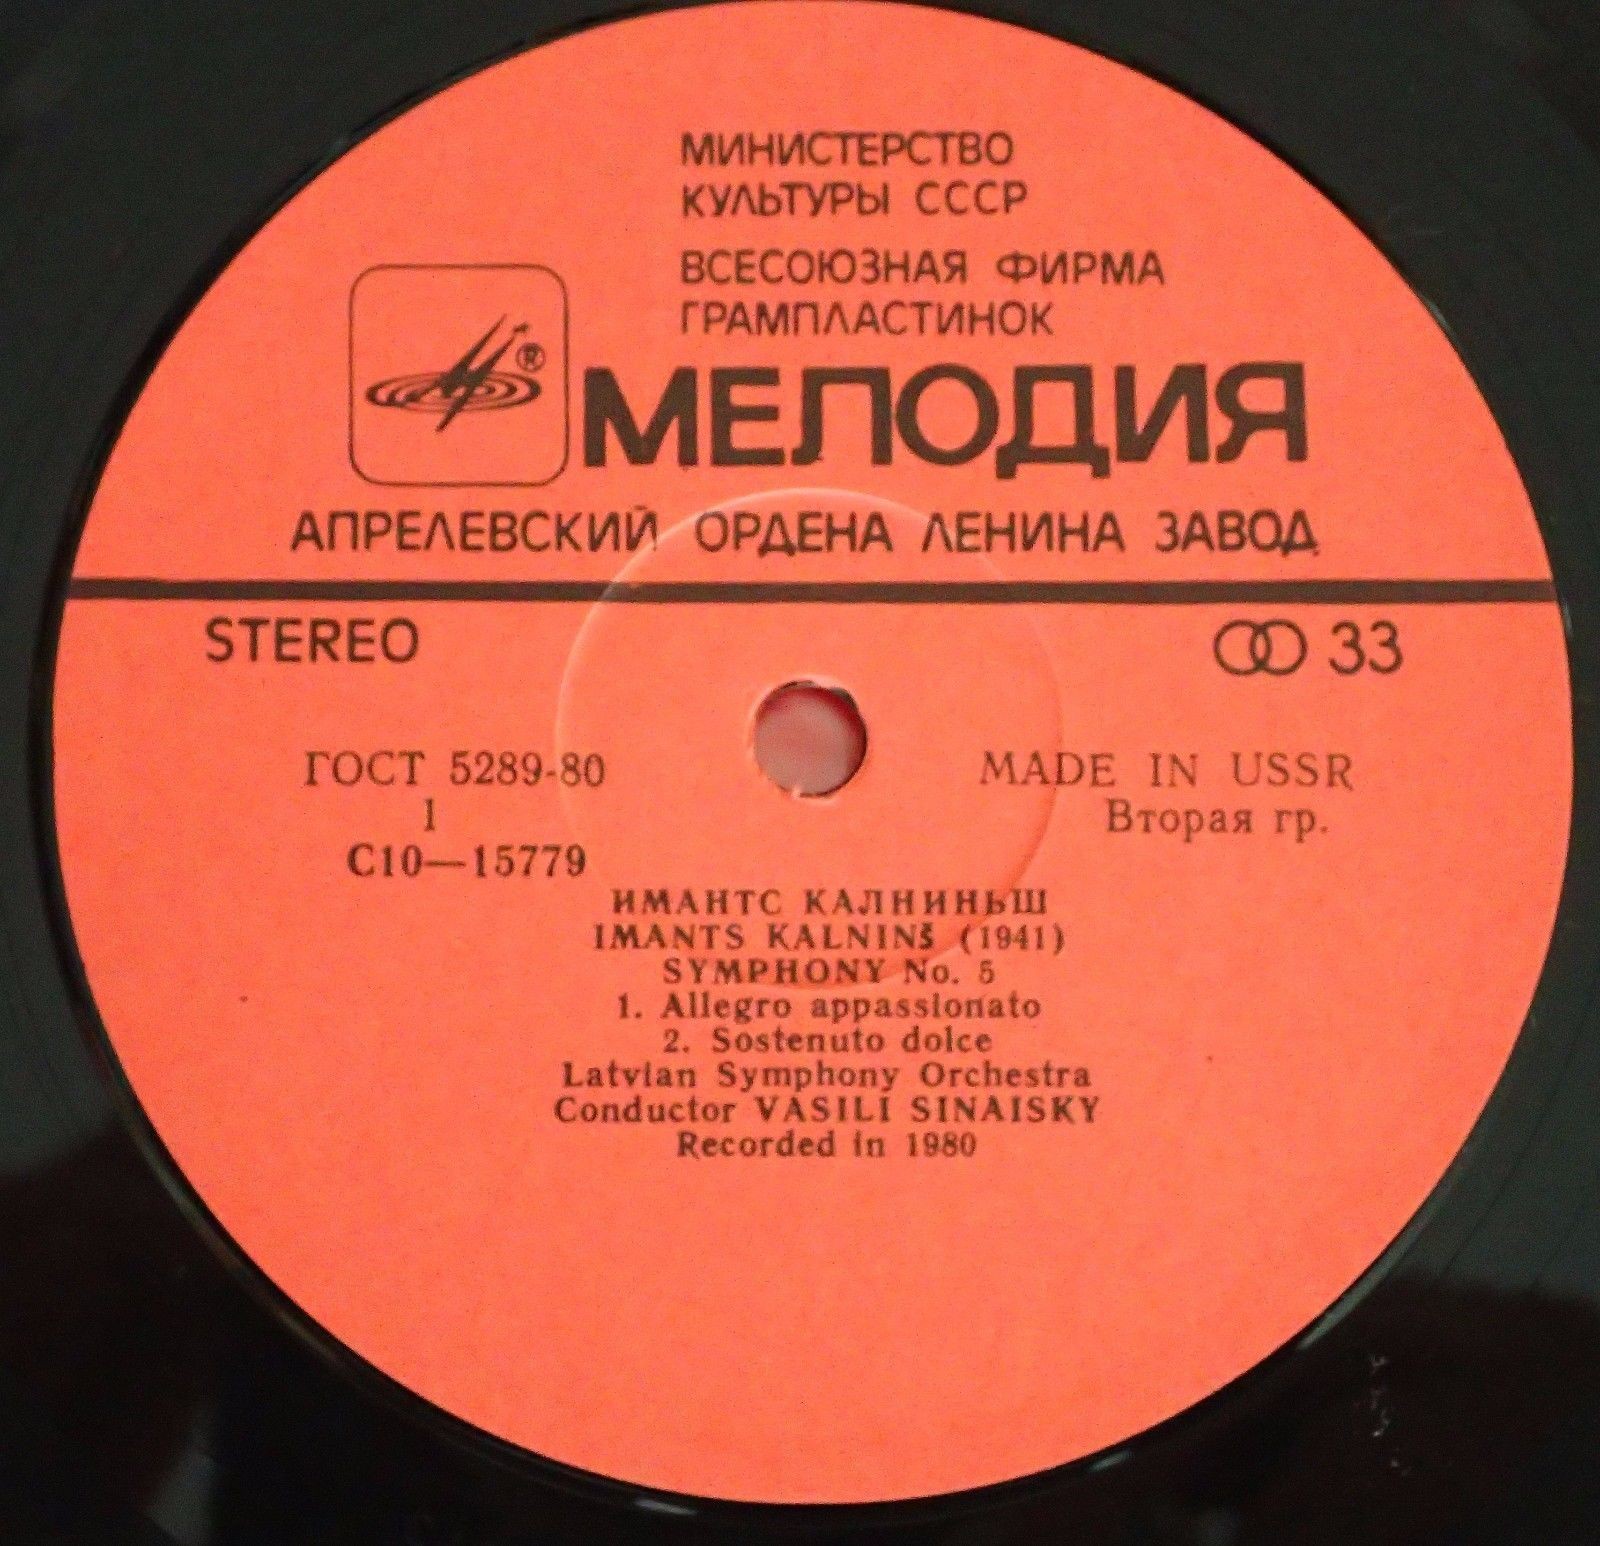 Имантс КАЛНИНЬШ (1941). Симфония № 5